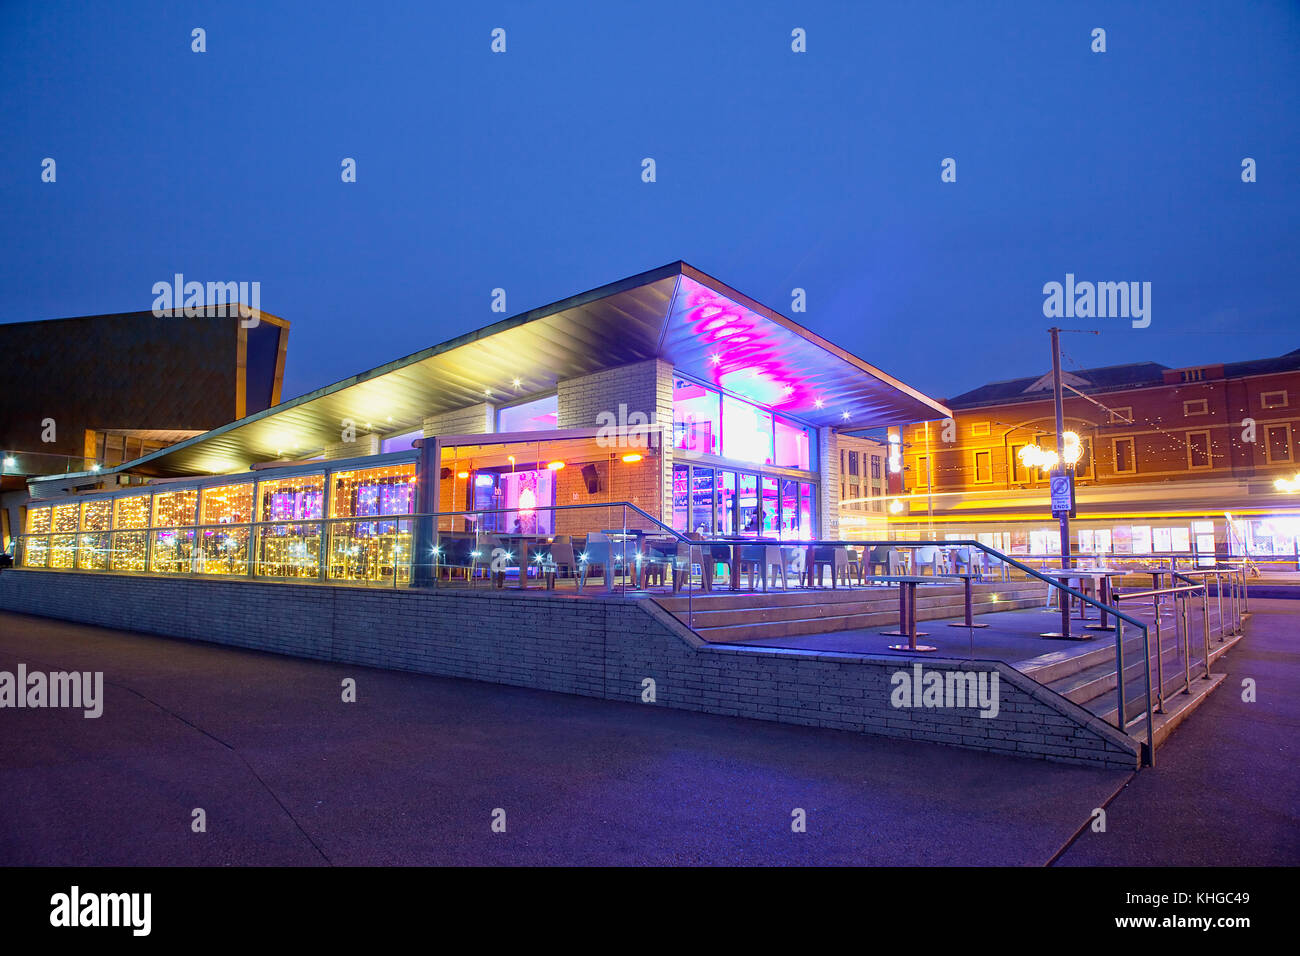 Inghilterra, lancashire, Blackpool, la passeggiata sul lungomare con ristorante illuminato al crepuscolo. Foto Stock